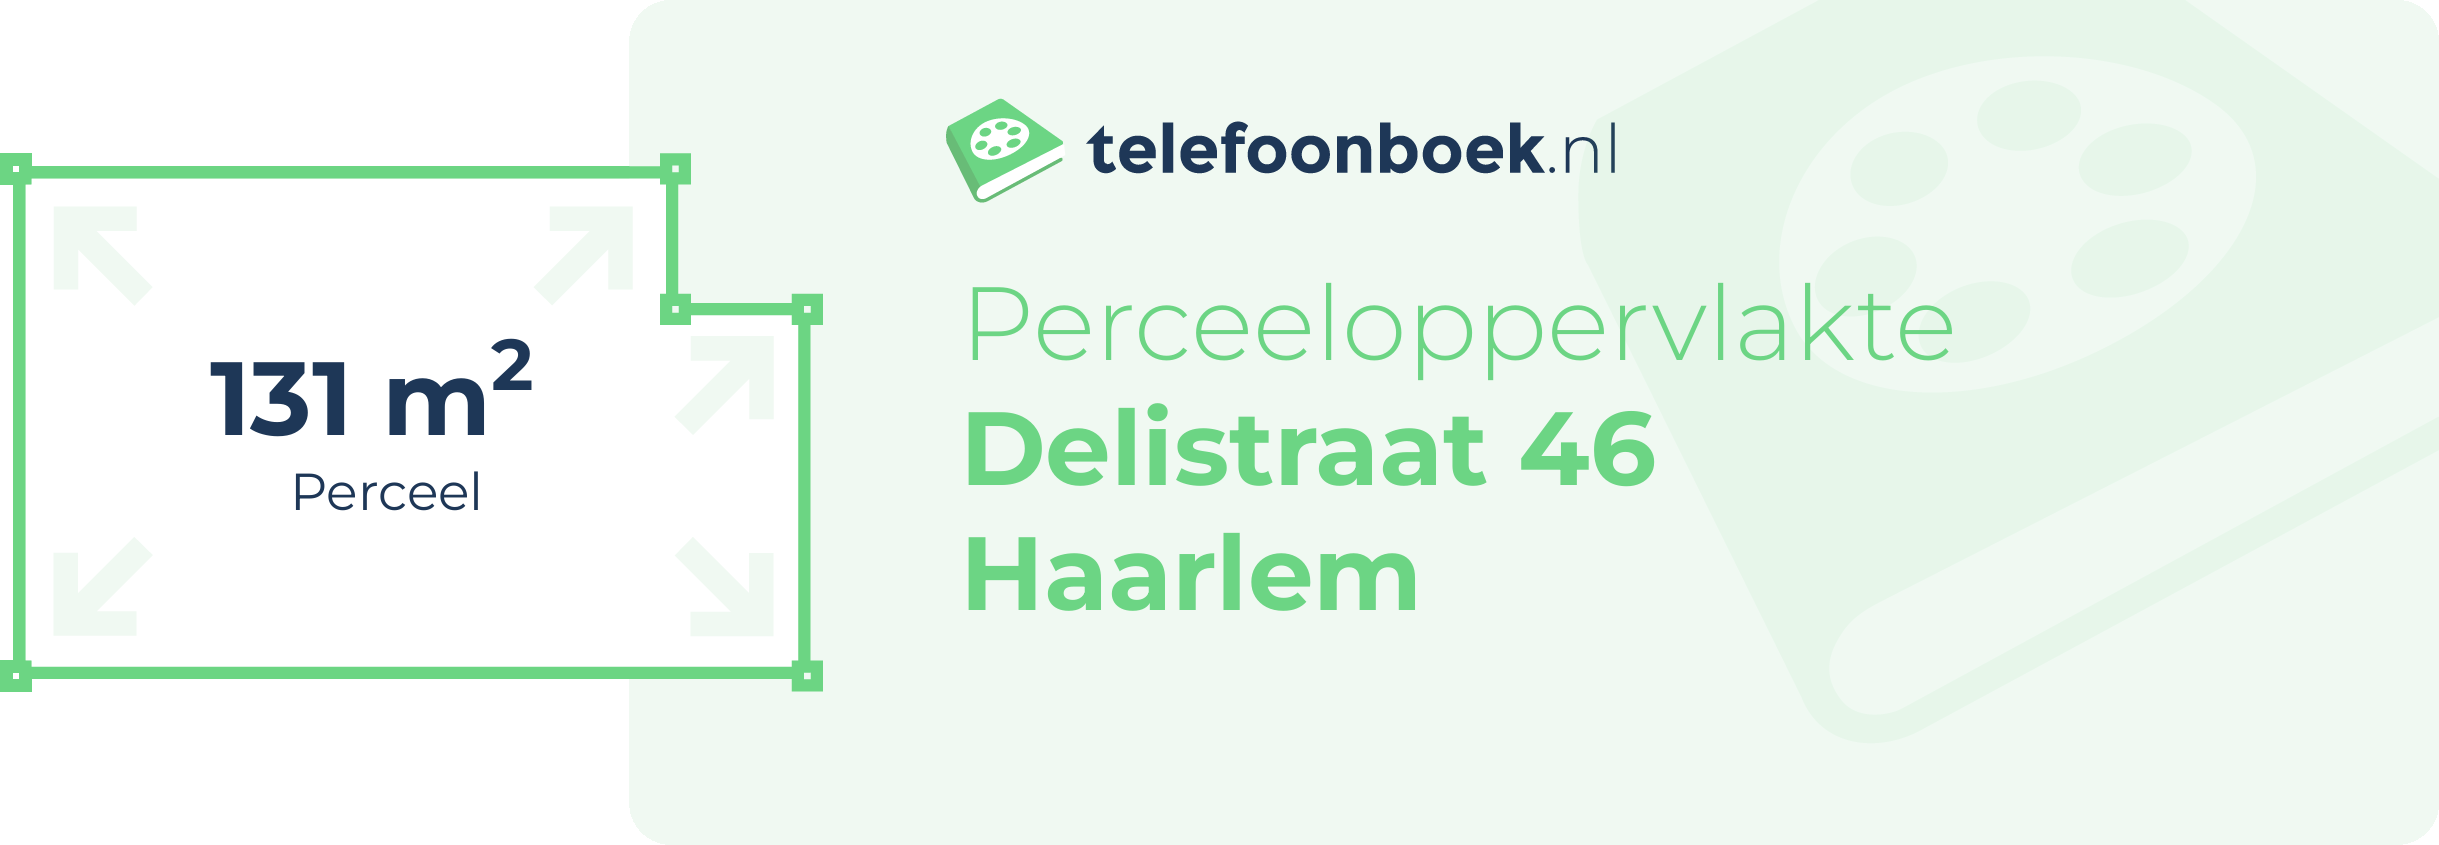 Perceeloppervlakte Delistraat 46 Haarlem